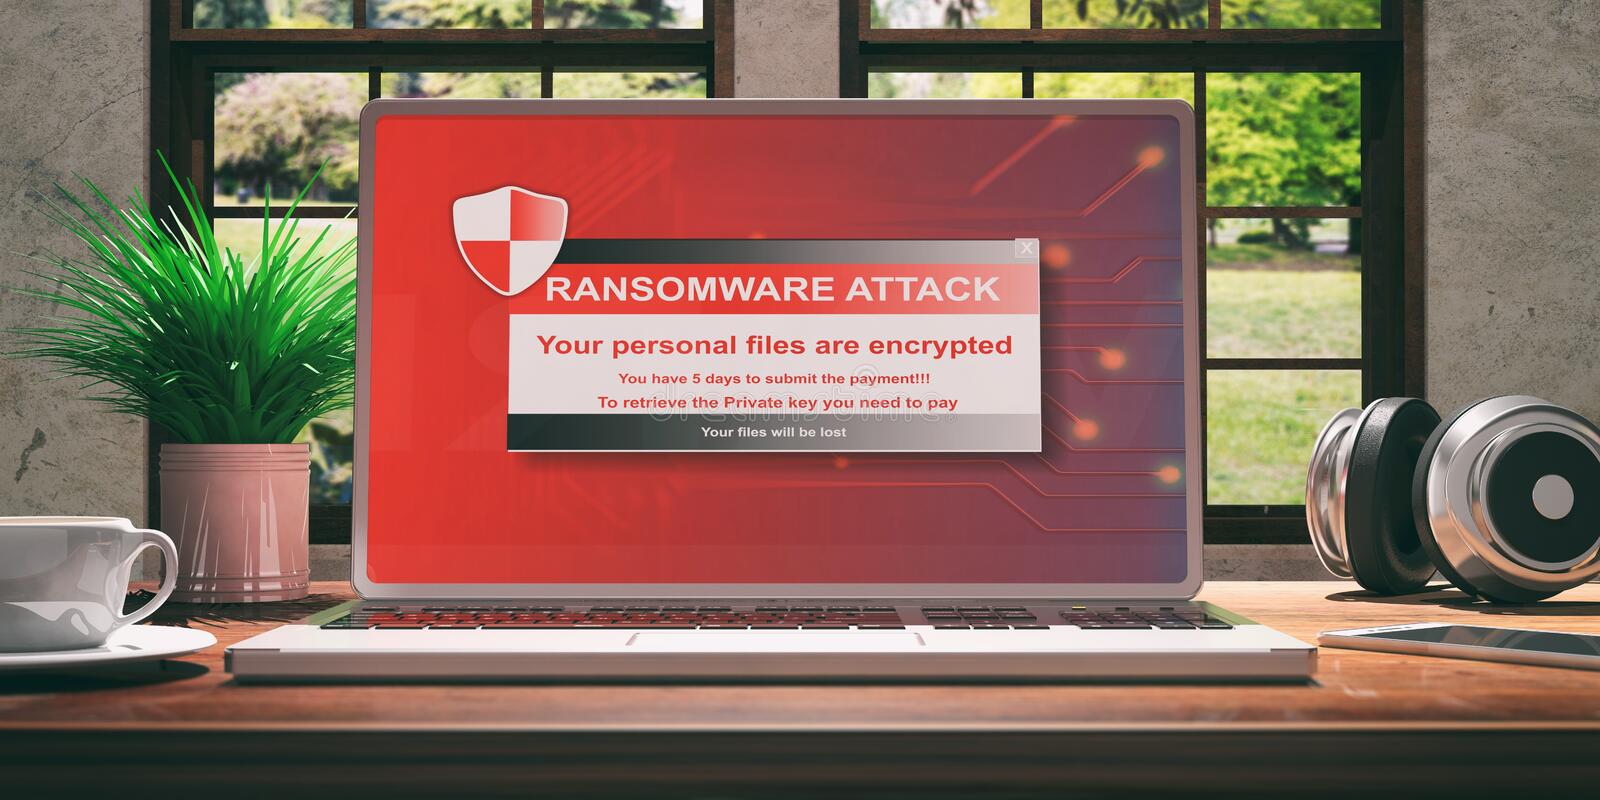 New RedAlert ransomware